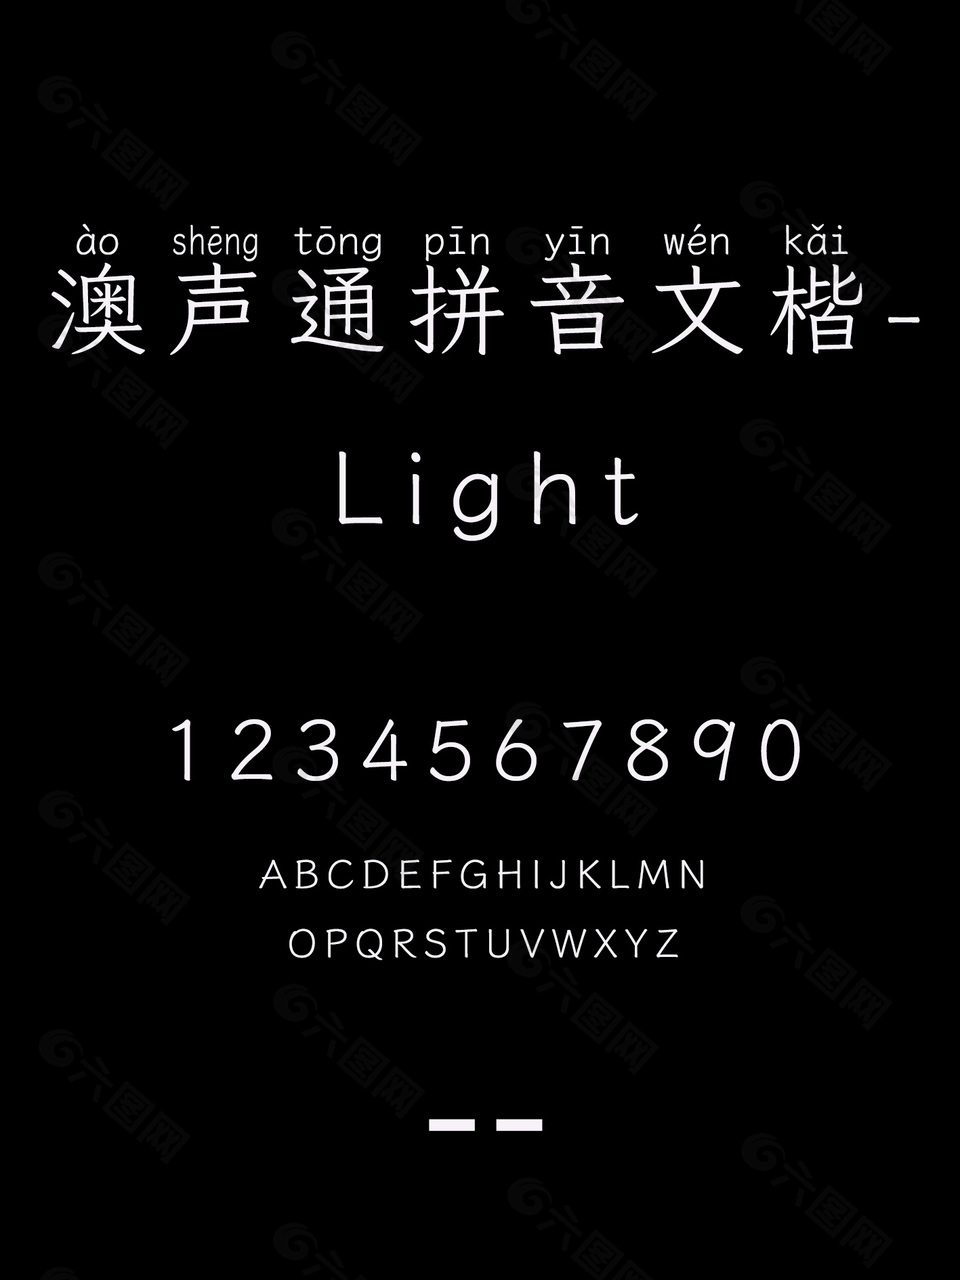 澳声通拼音文楷-Light字体下载